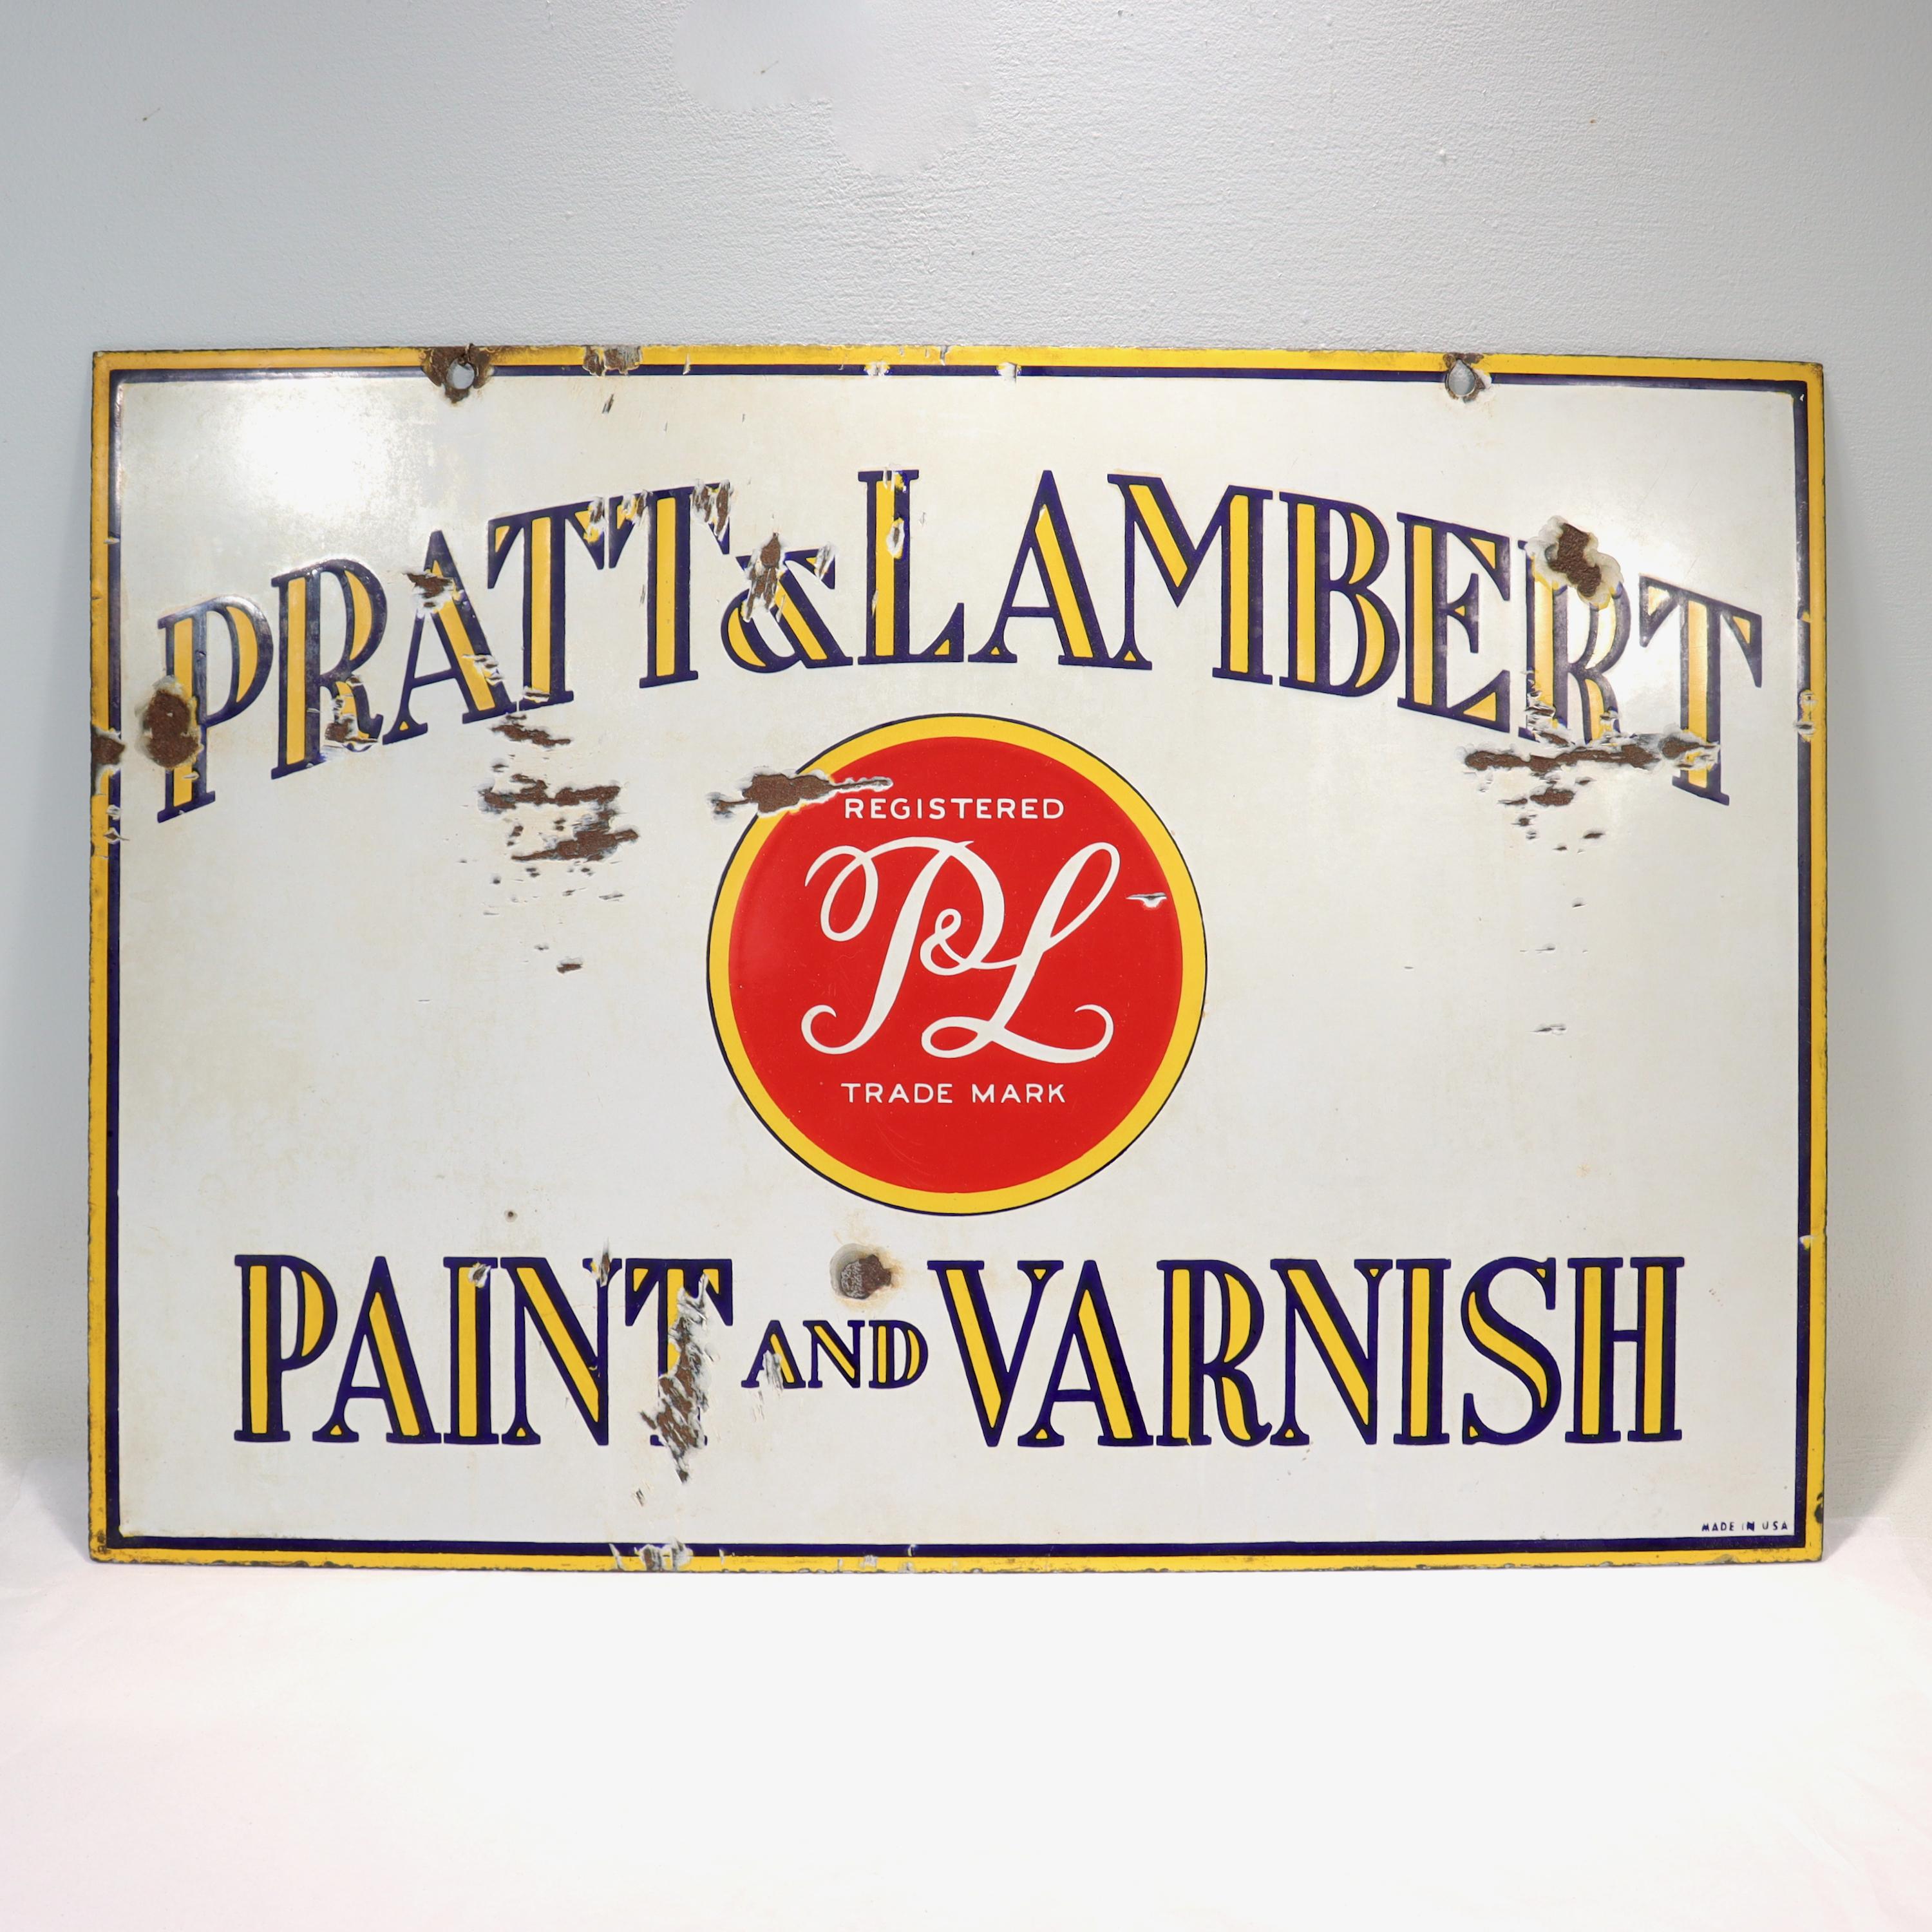 Une belle enseigne publicitaire vintage en émail double face.

Pour la célèbre entreprise de peinture Pratt & Lambert. 

Avec une décoration jaune et rouge sur un fond blanc.

Le texte se lit comme suit : pRATT & LAMBERT PAINT AND